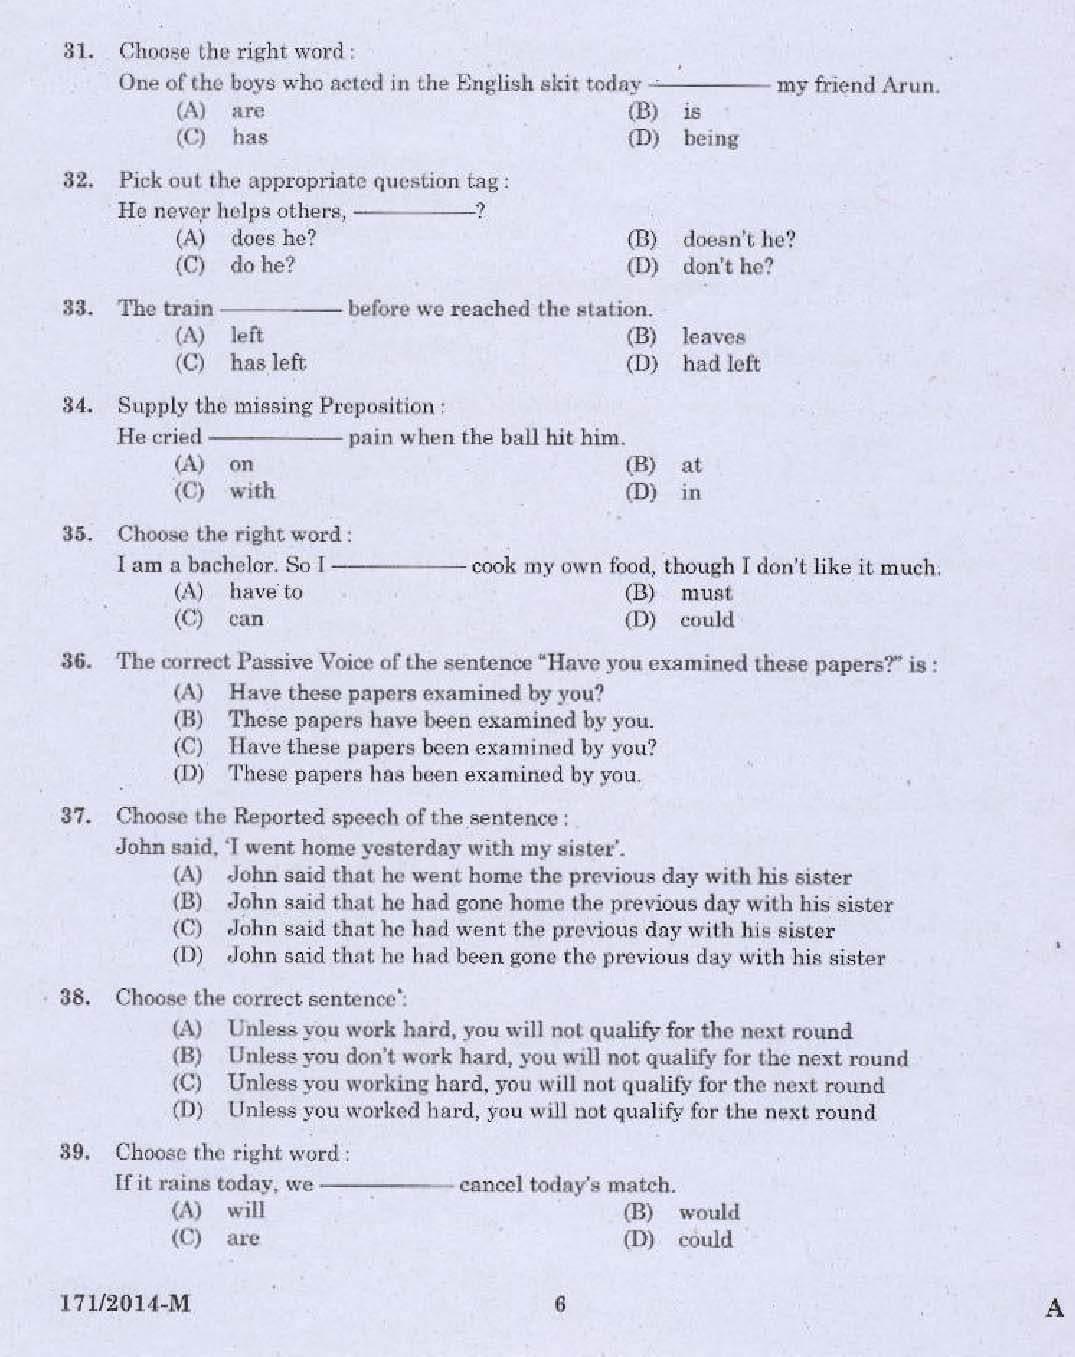 Kerala PSC Driver Grade II Exam 2014 Question Paper Code 1712014 M 4